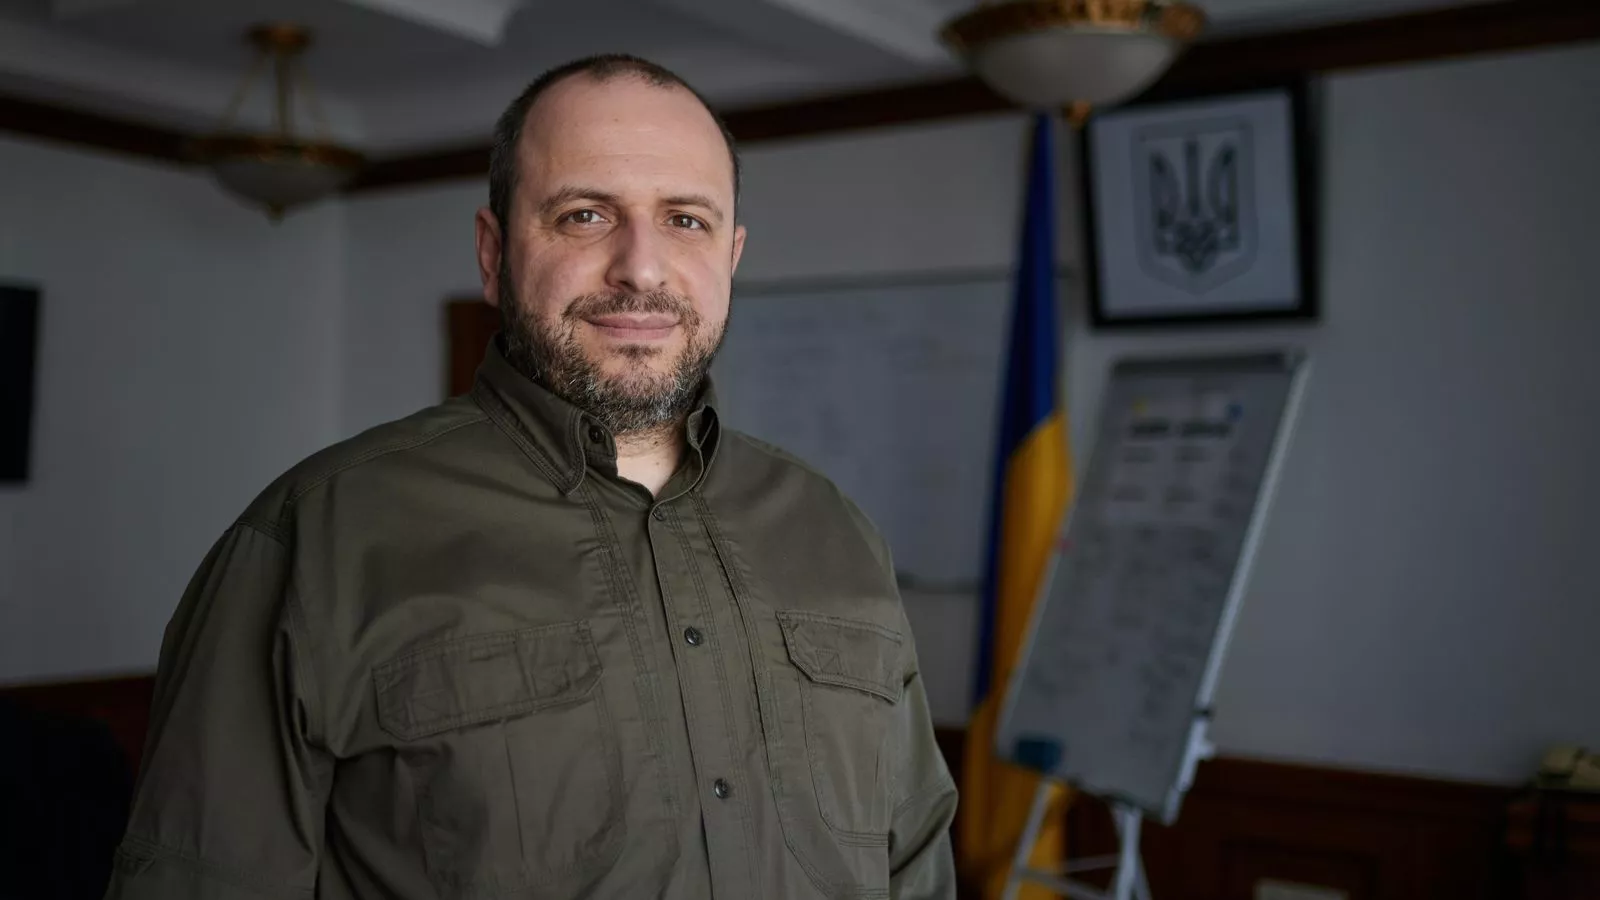 Rustem Umirov responded to a statement by Volodymyr Aryev, who allegedly produced Zalushny's publication: 